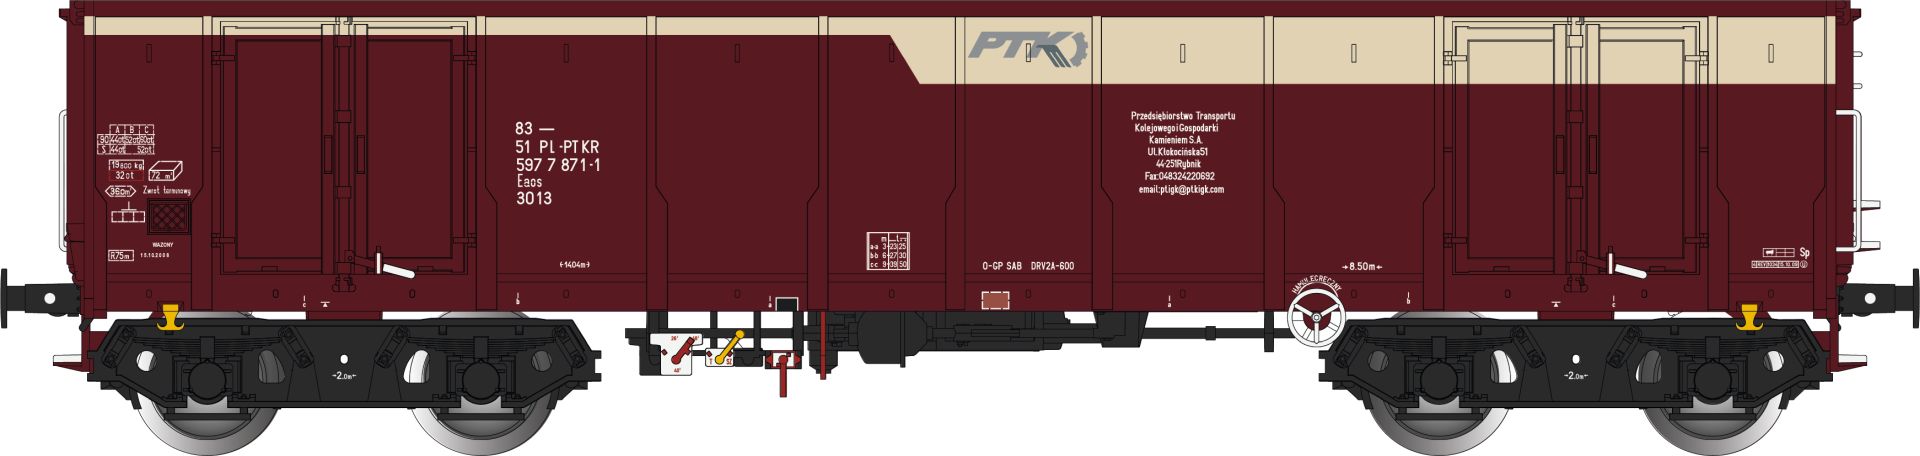 Albert Modell 597033 - Offener Güterwagen Eas, PL-PTKR, Ep.VI